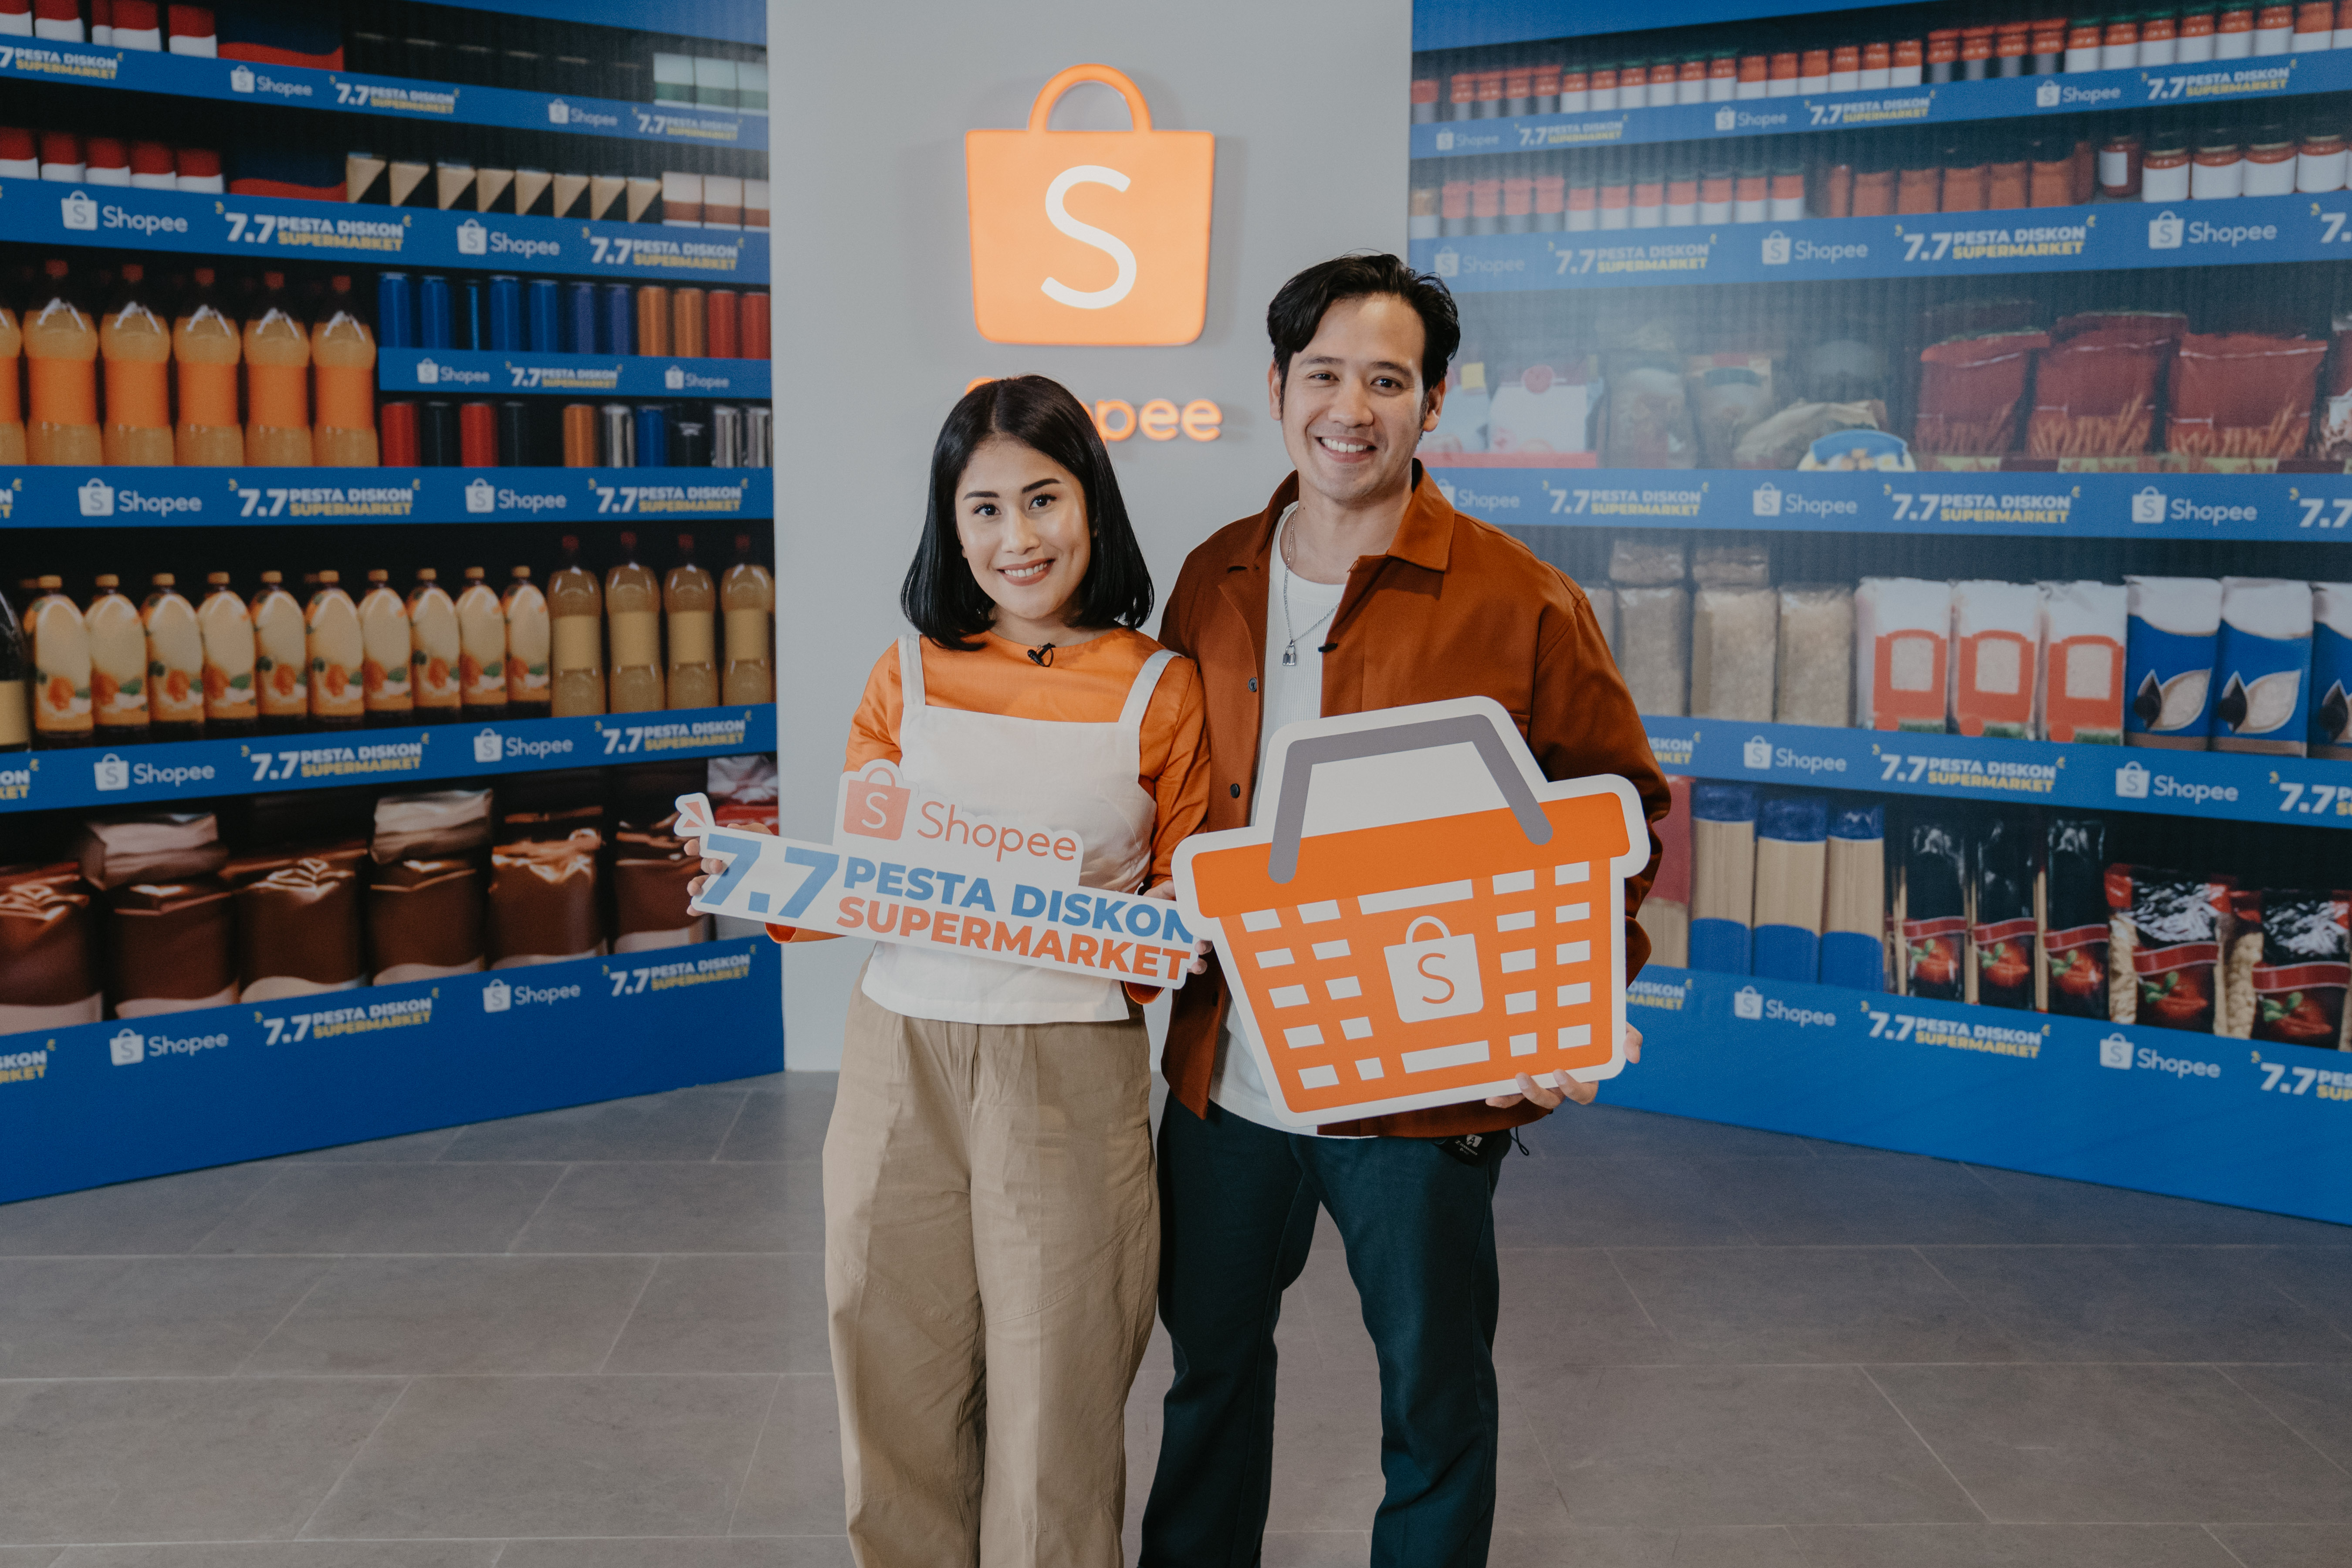  Shopee Gelar 7.7 Pesta Diskon Supermarket untuk Belanja Kebutuhan Pokok dari Rumah